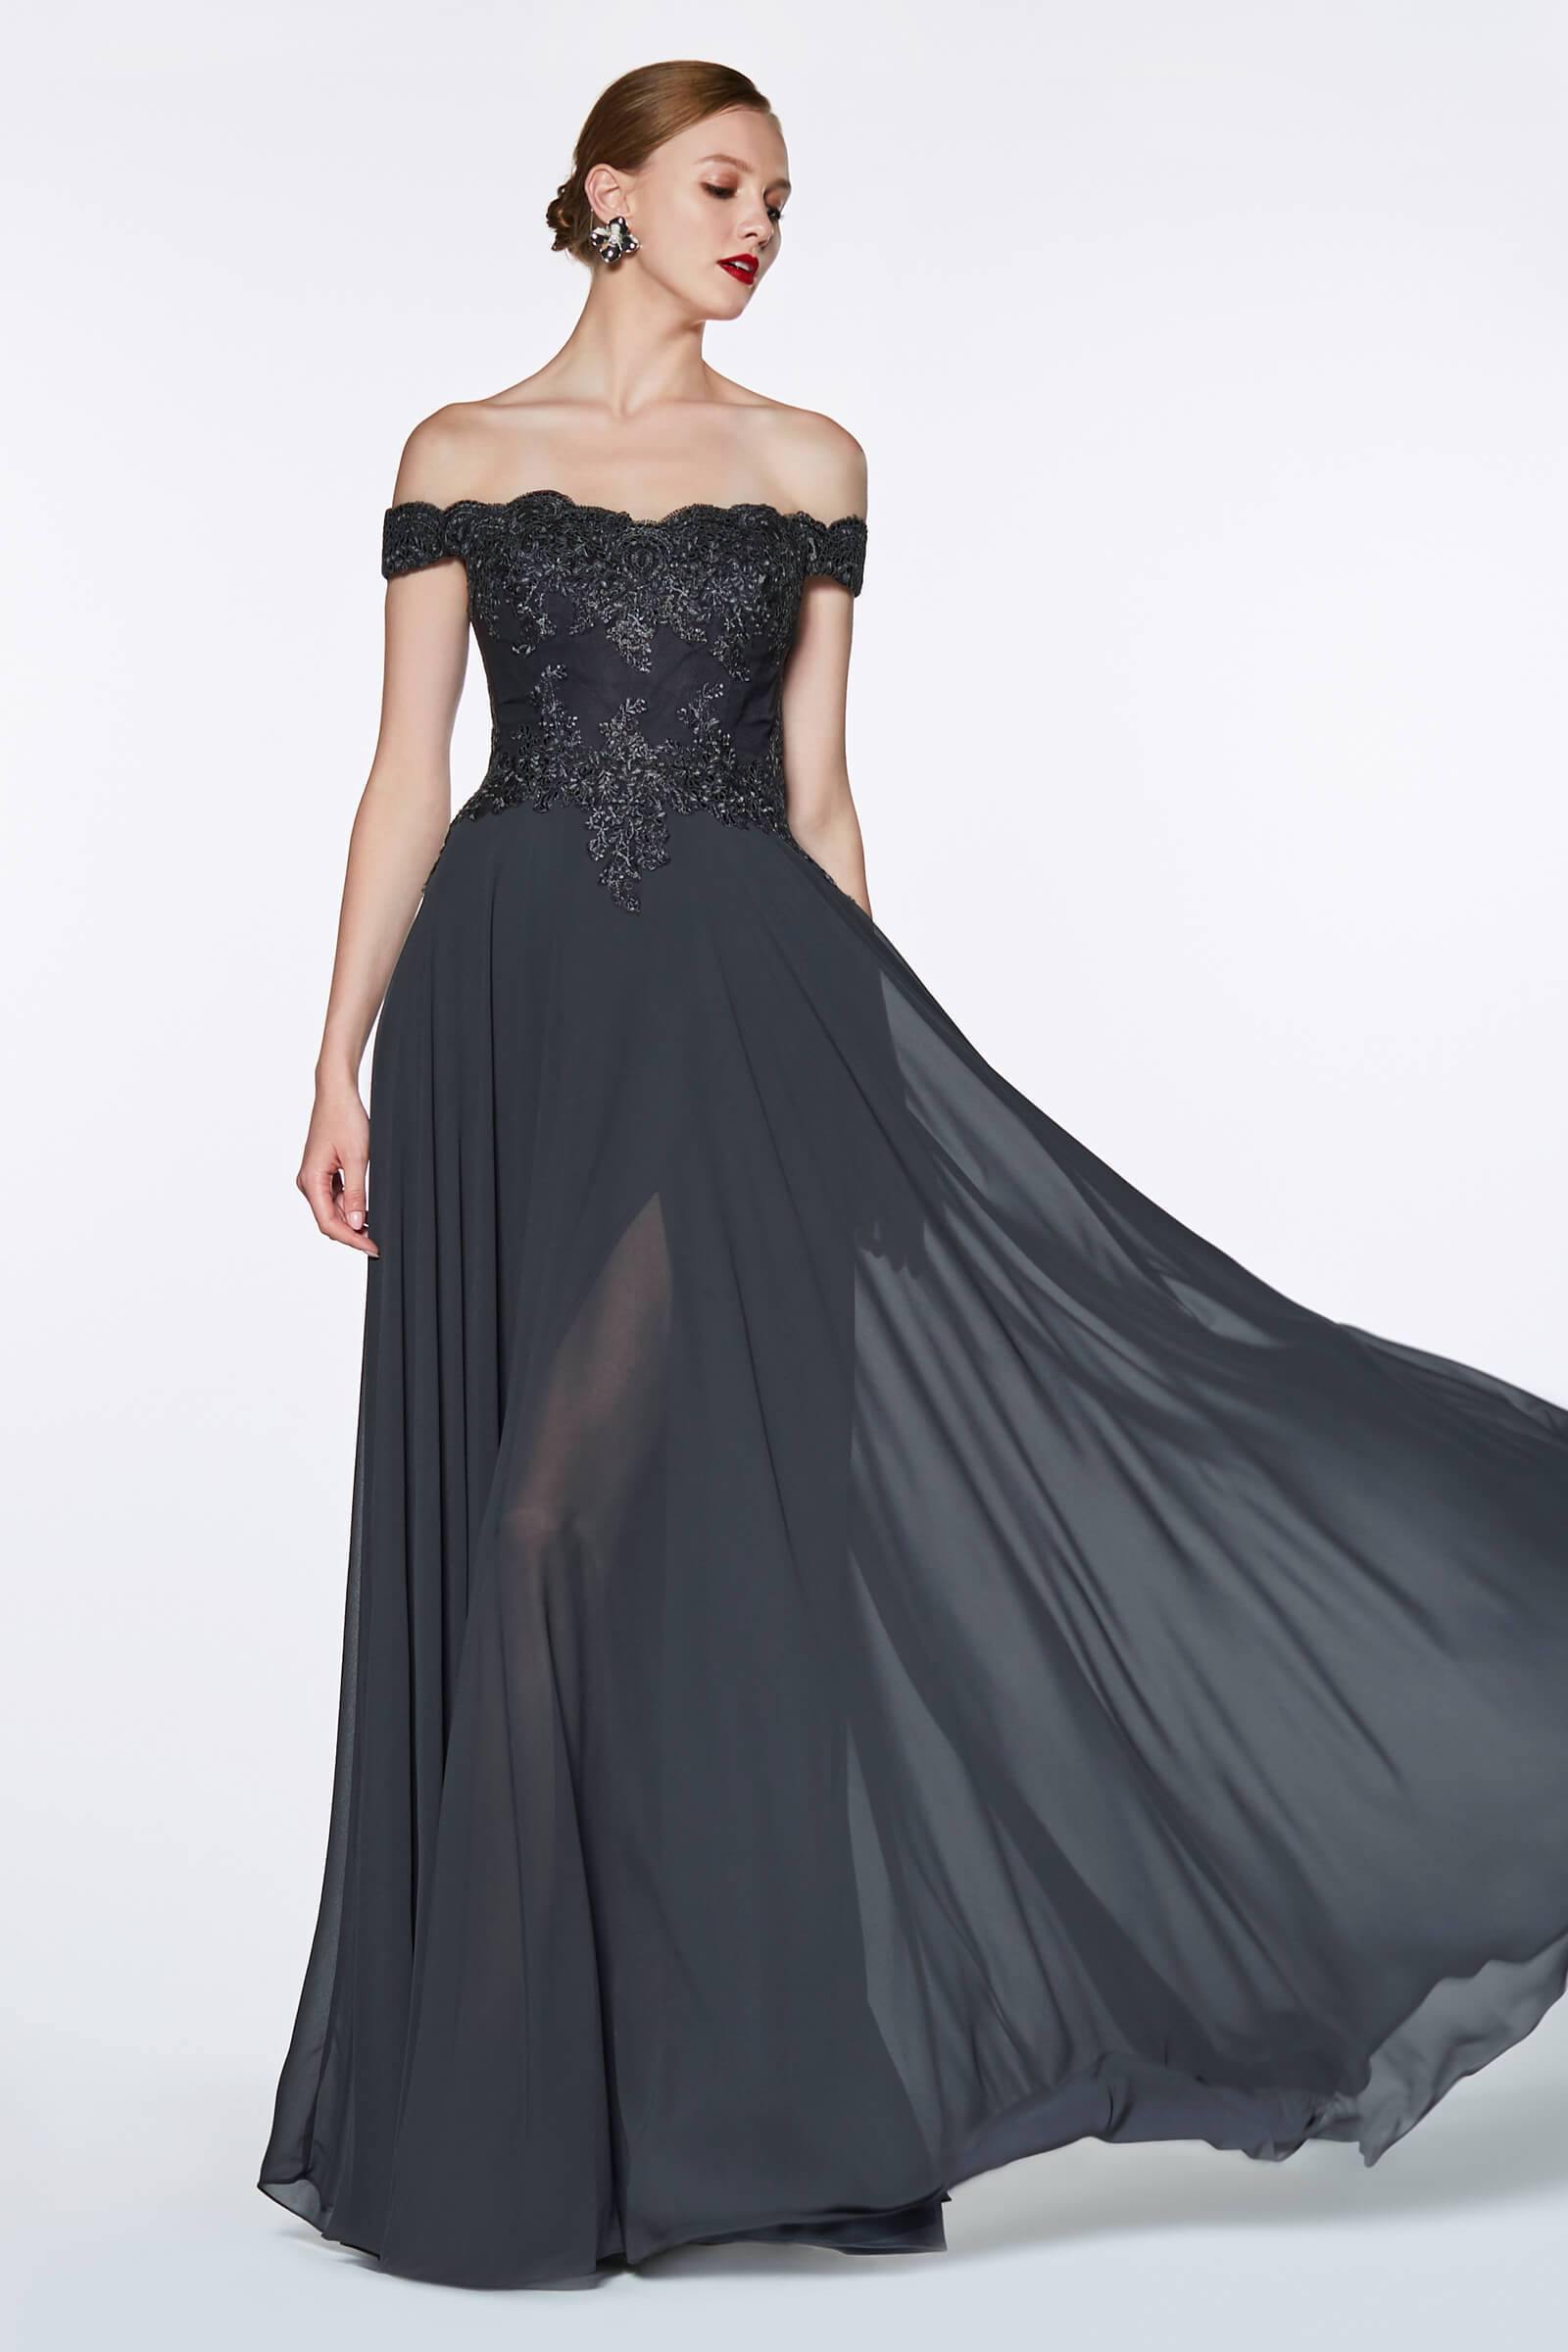 Prom Long Formal Off Shoulder Evening Lace Dress Black